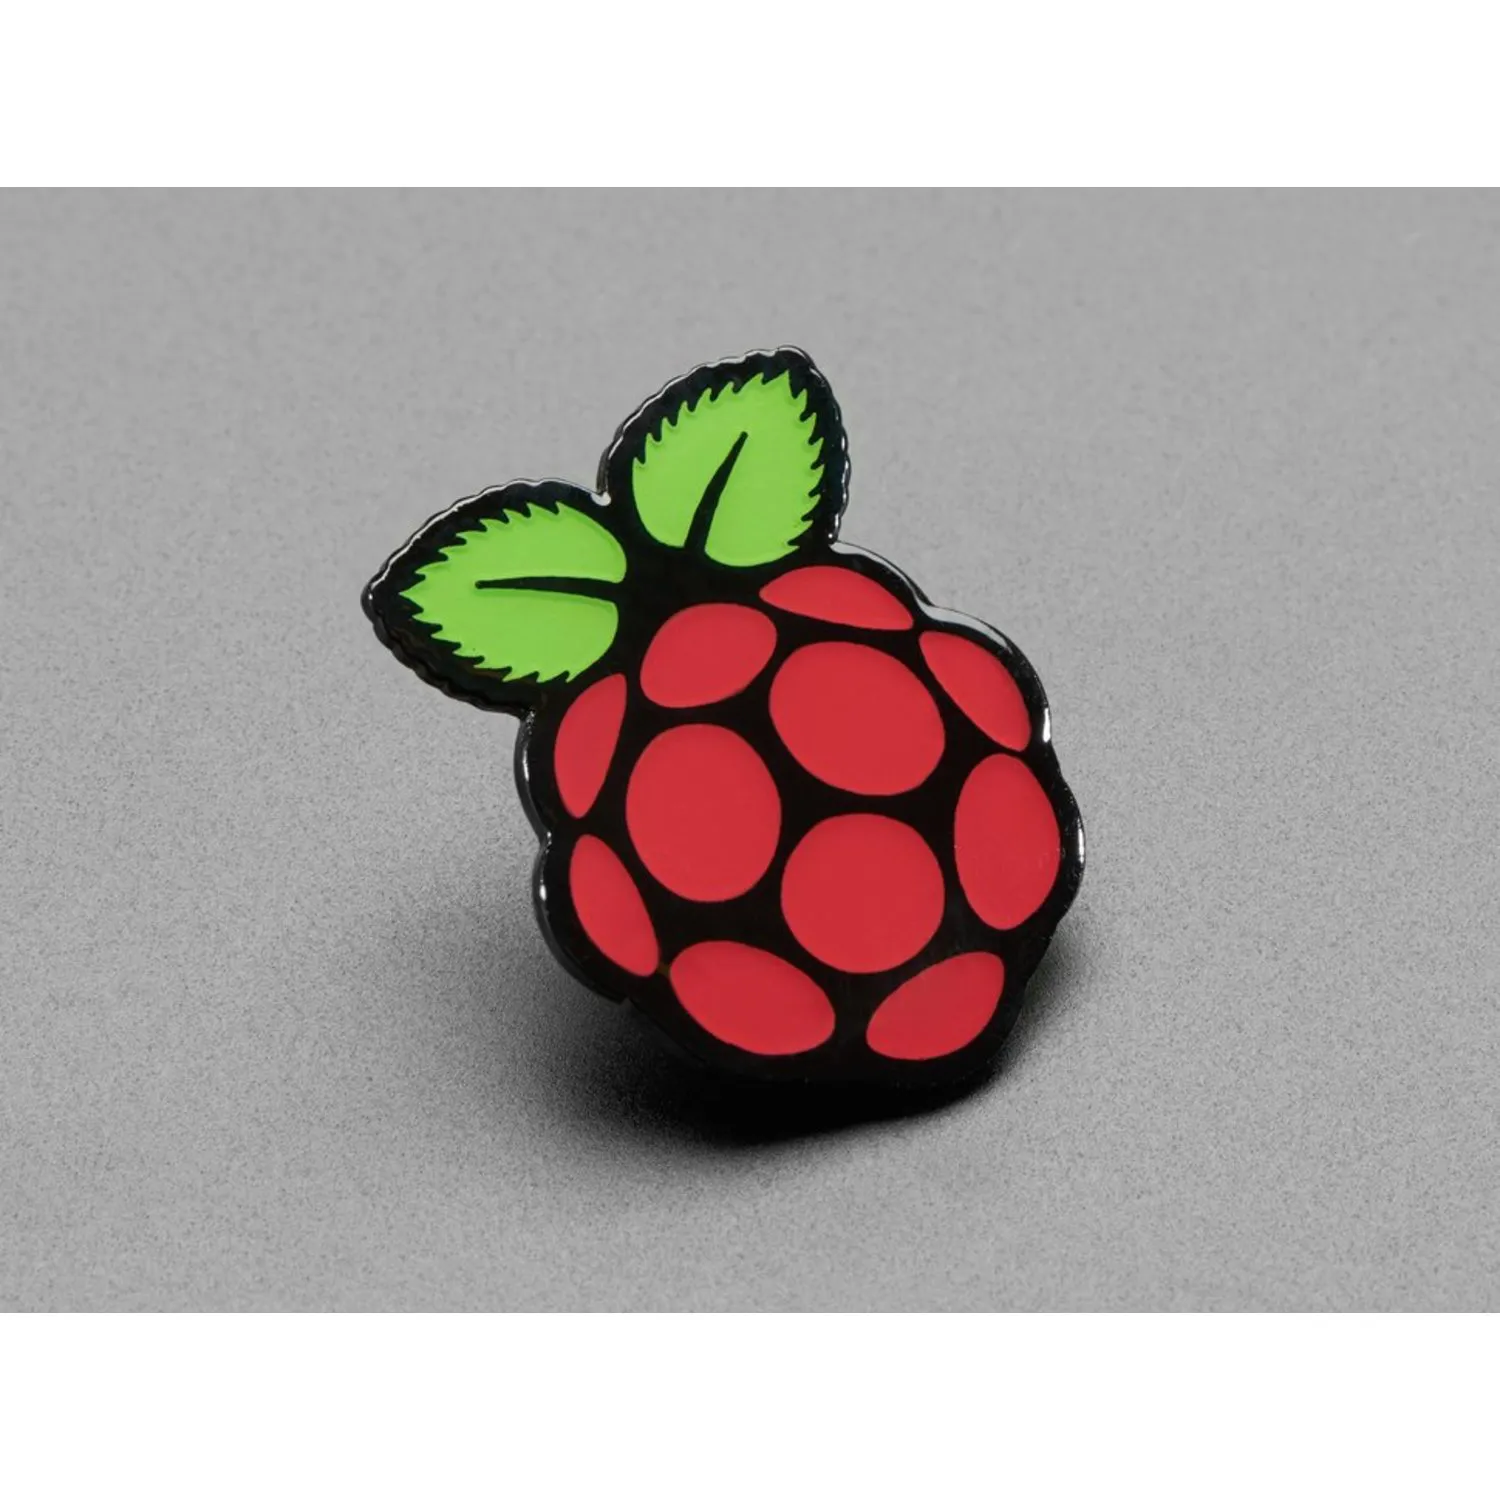 Photo of Raspberry Pi Enamel Pin